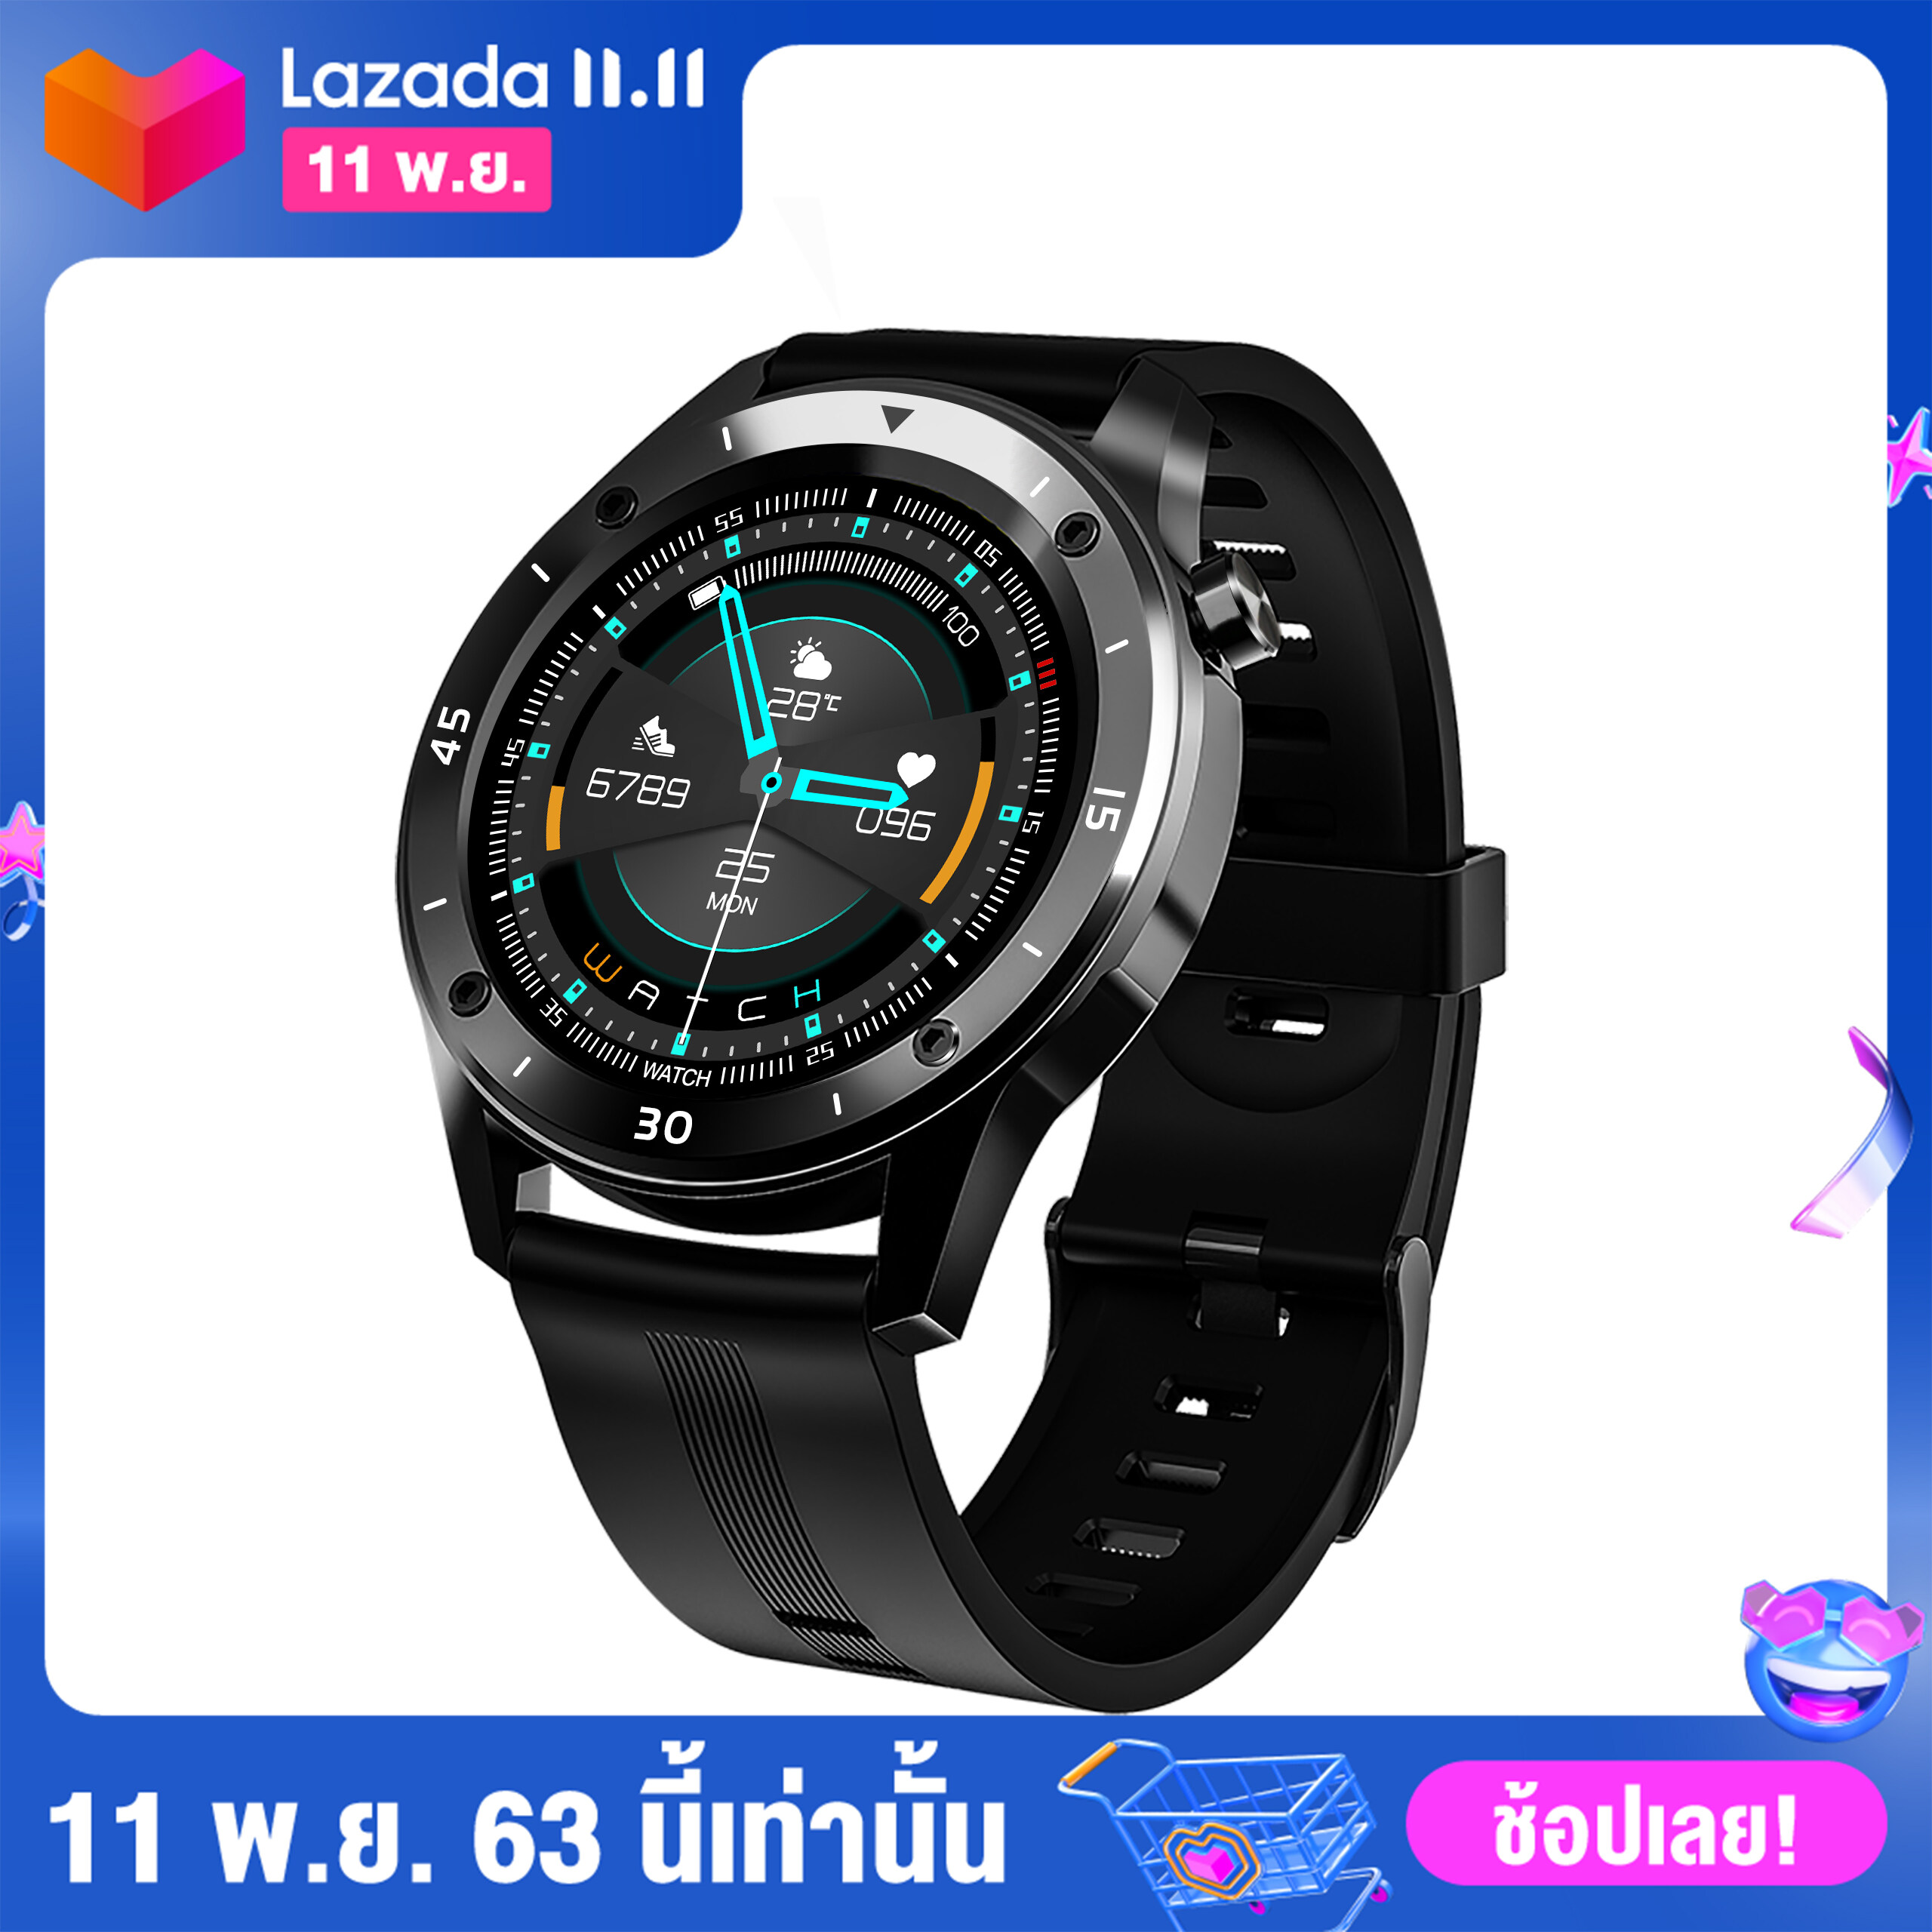 สมาร์ทวอทช์ huawei ใช้ได้ รองรับภาษาไทย xiaomi ใช้ได้ Smart Watch นาฬิกาสมาทวอช F22SA ภาษาไทย วัดชีพจร ความดัน นับก้าว เตือนสายเรียกเข้า ไม่มียี่ห้อ